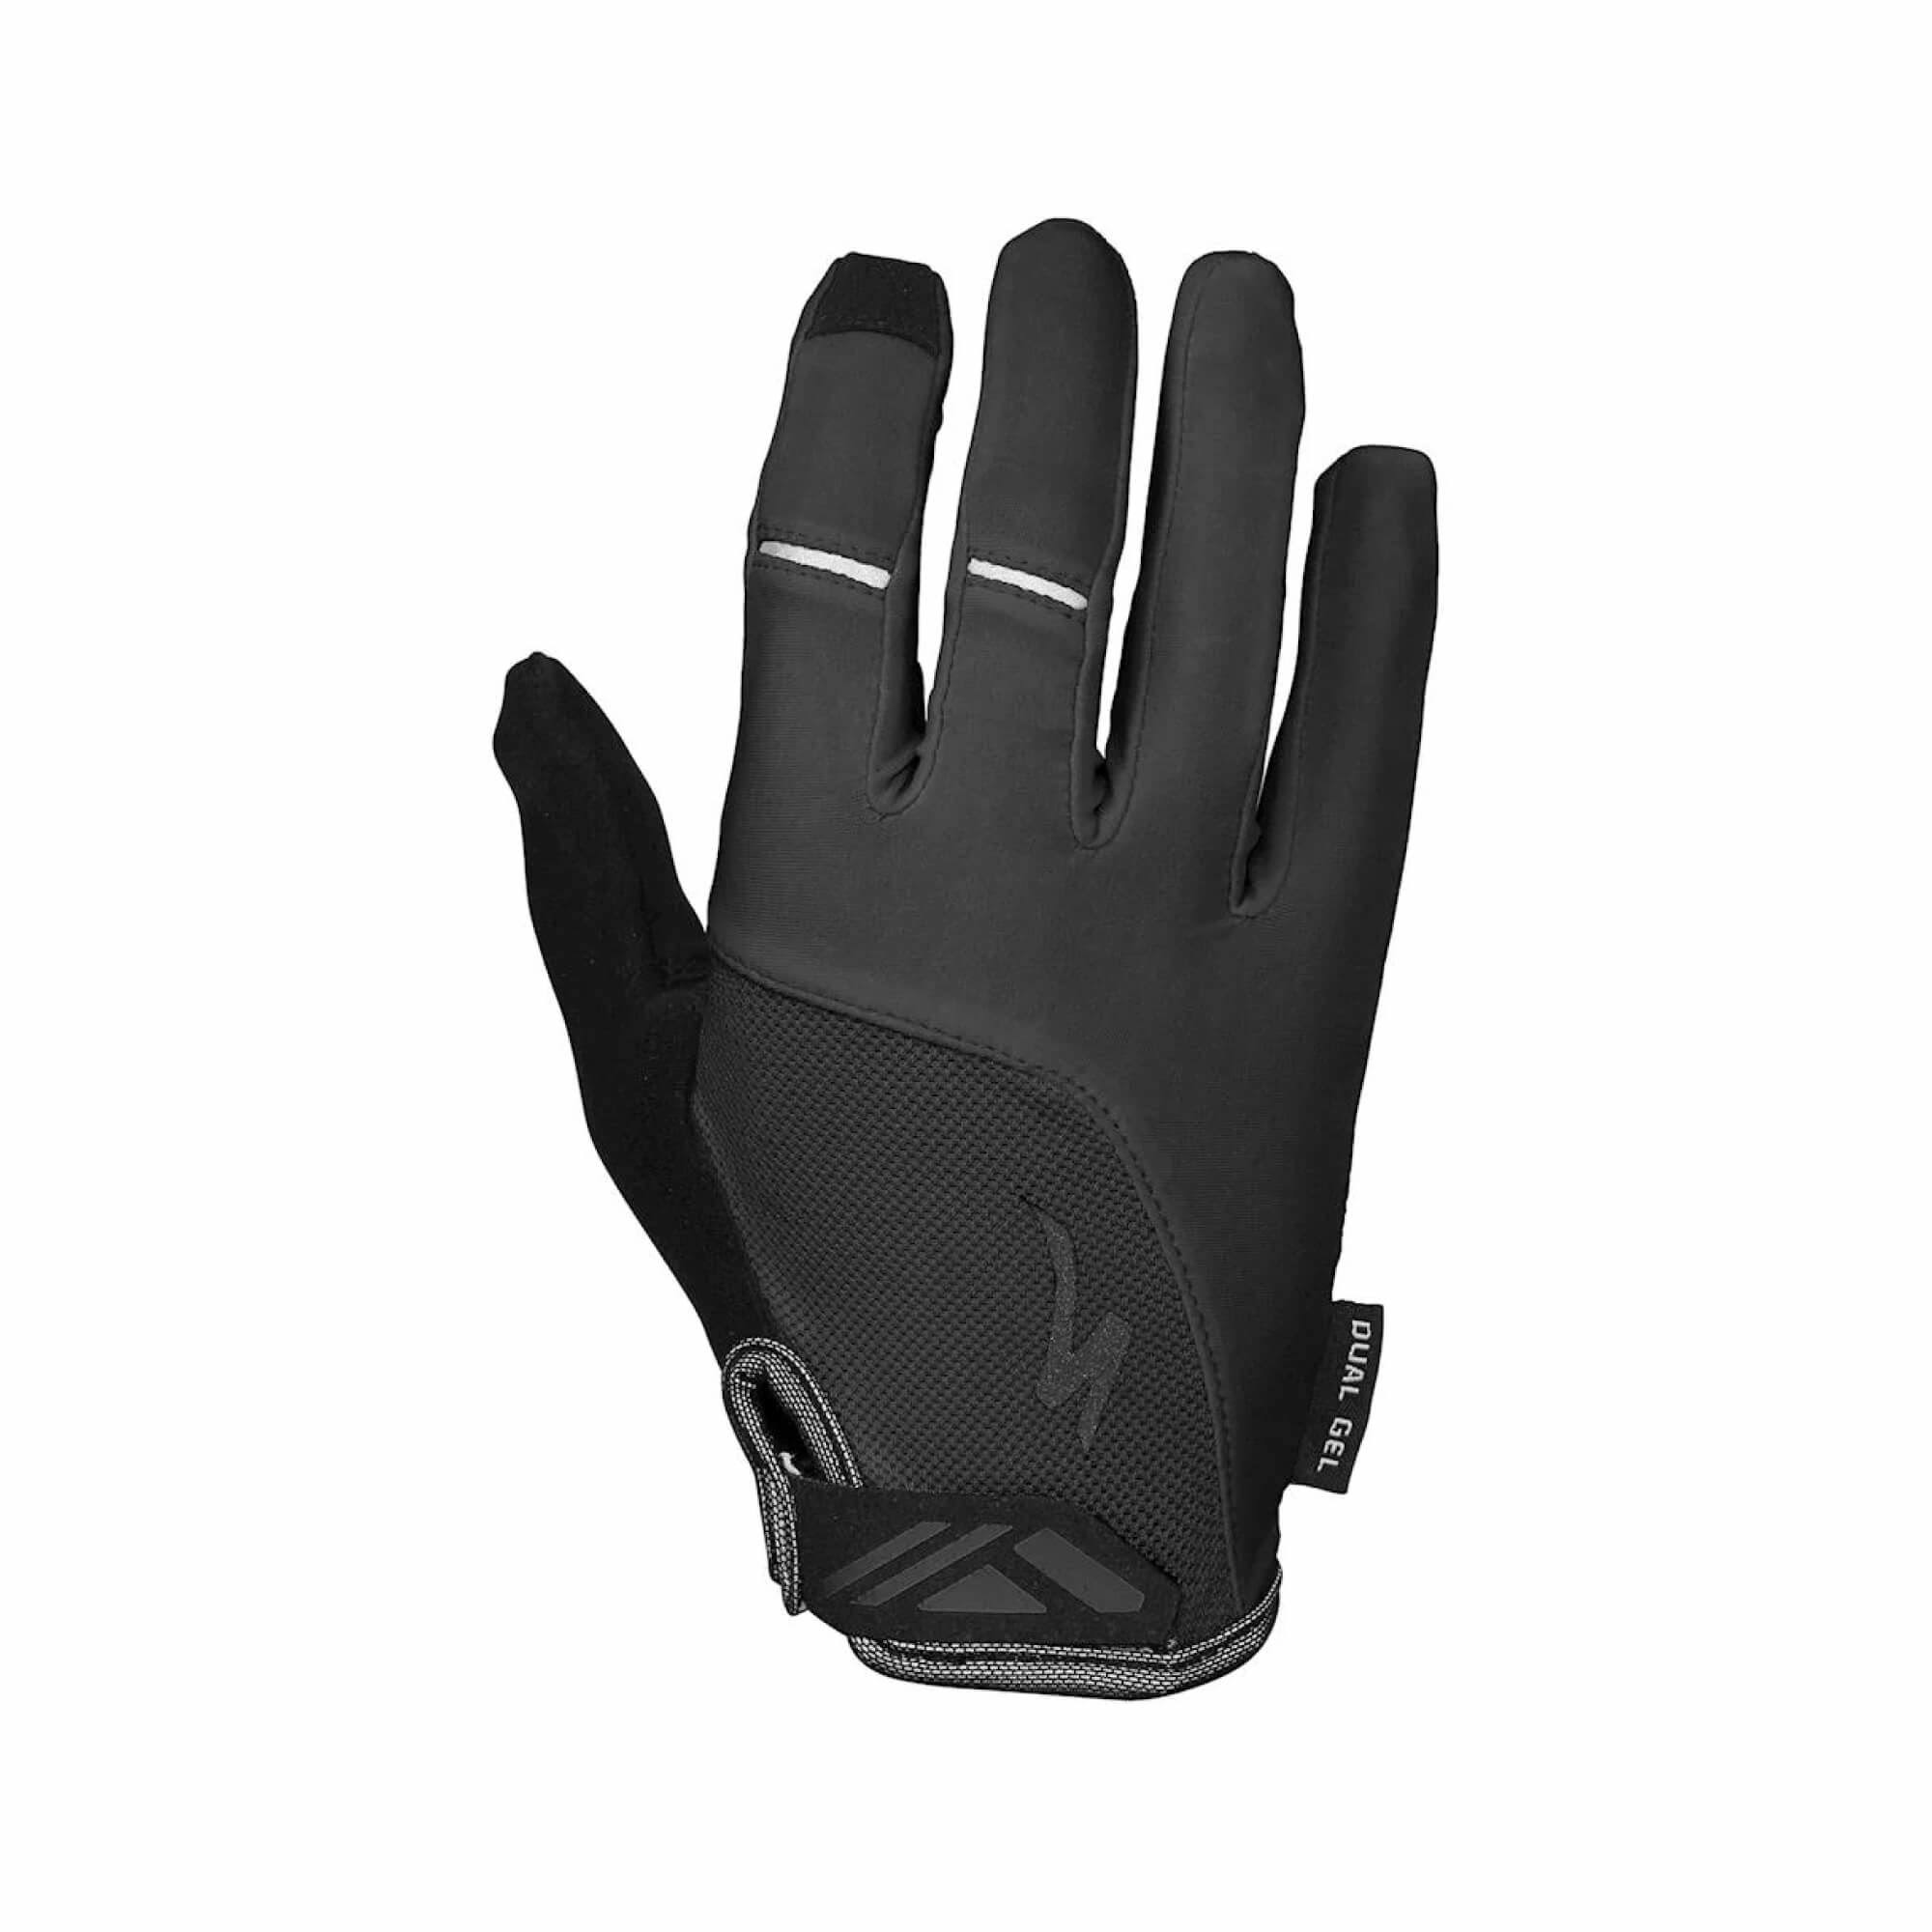 Specialized Body Geometry Dual Gel Women's Glove Long Fingers Black